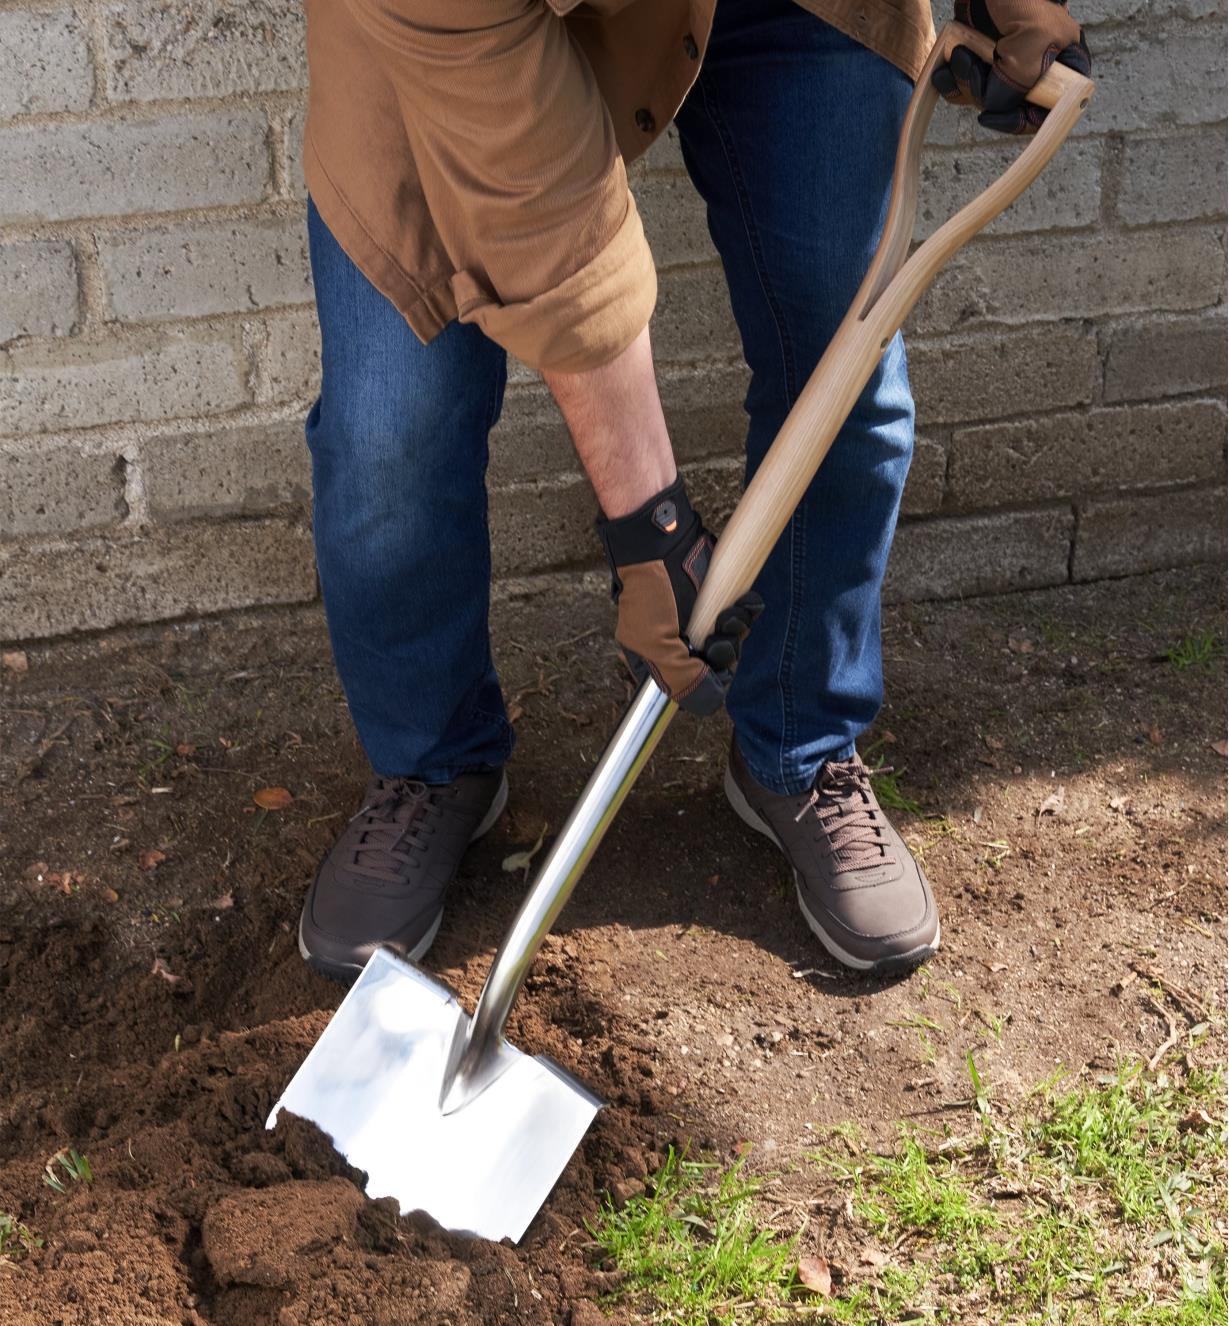 Personne se servant d'une pelle en acier inoxydable pour creuser le sol